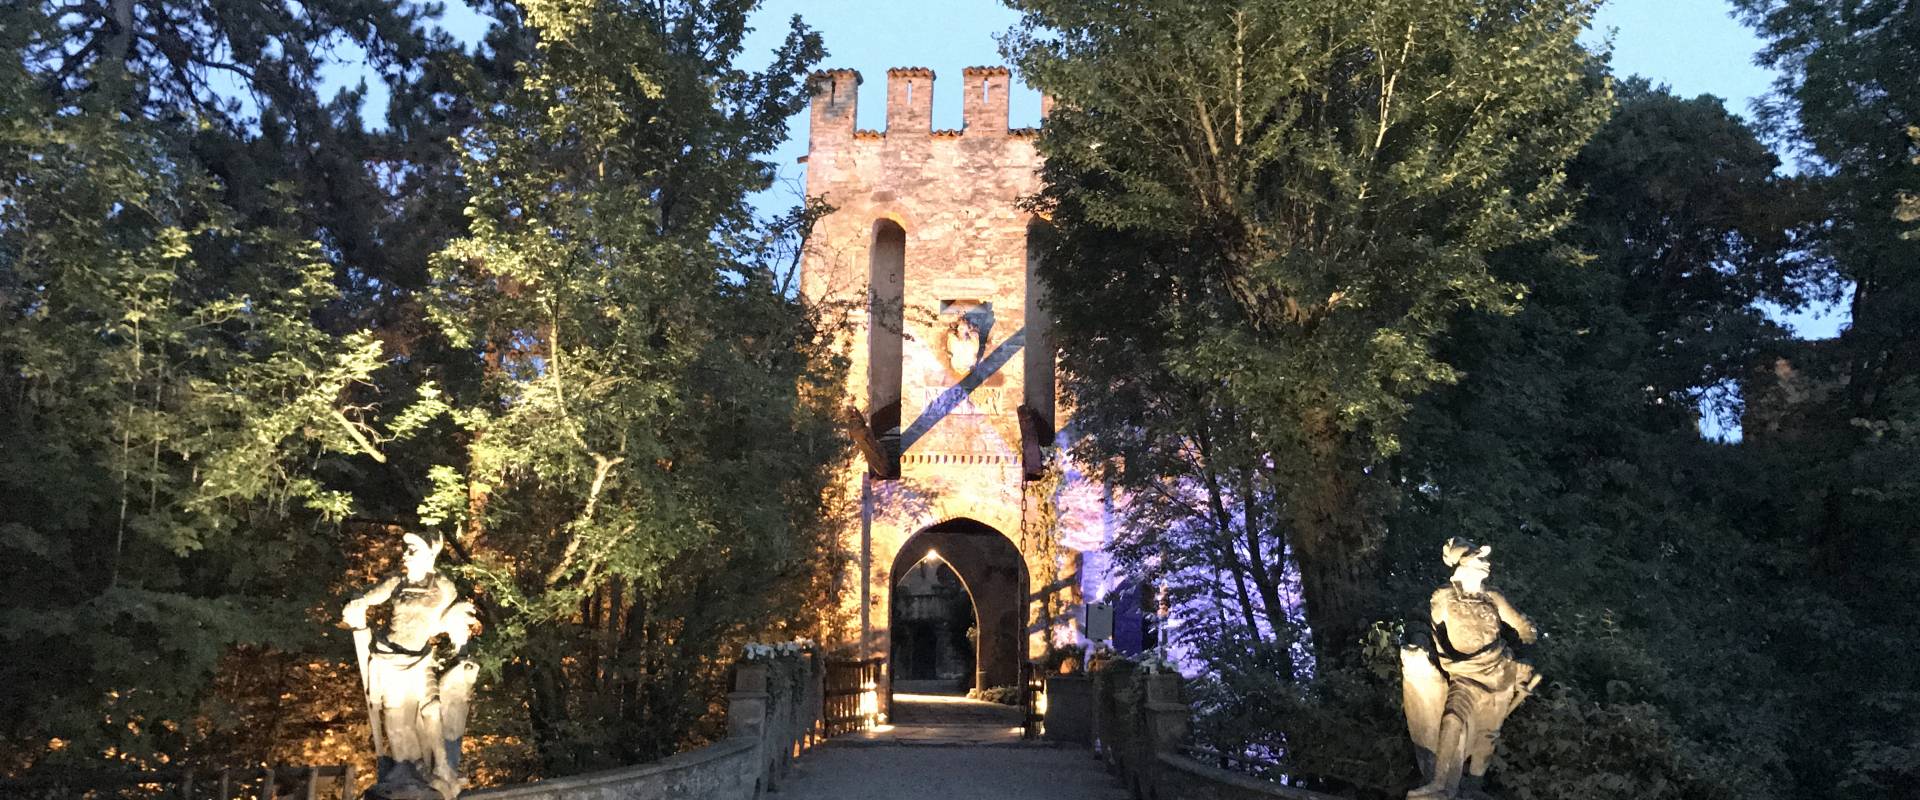 Castello di Gropparello - la facciata con il ponte levatoio foto di Rita Trecci Gibelli